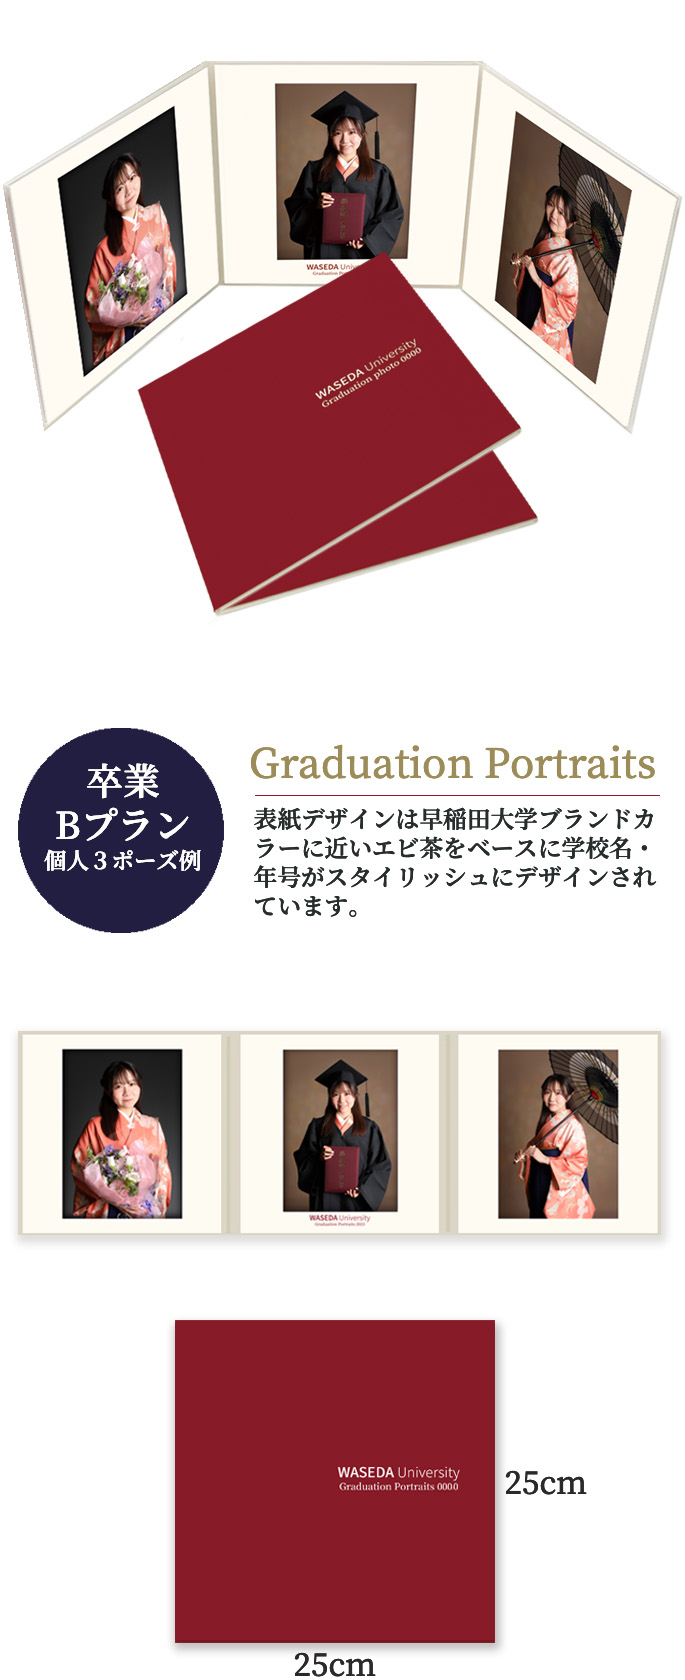 卒業 Bプラン 個人3ポーズ Graduation Portraits  表紙デザインは早稲田大学ブランドカラーに近いエビ茶をベースに学校名・年号がスタイリッシュにデザインされています。